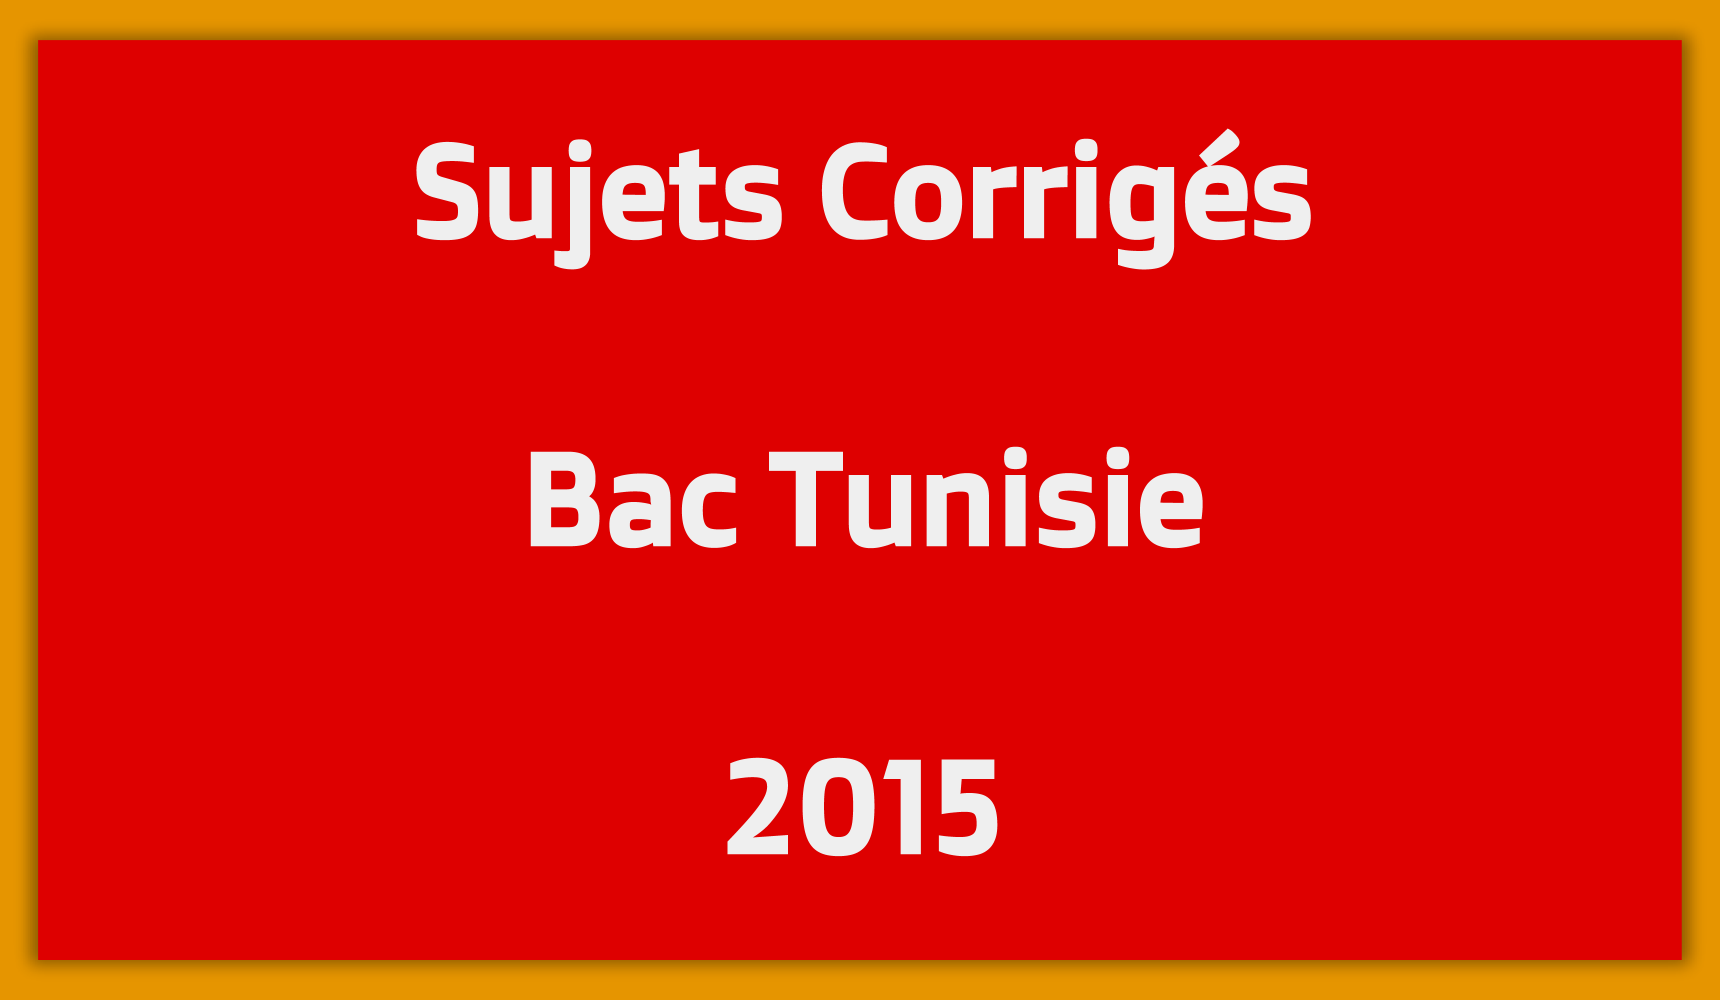 Sujets Corrigés Bac Tunisie 2015